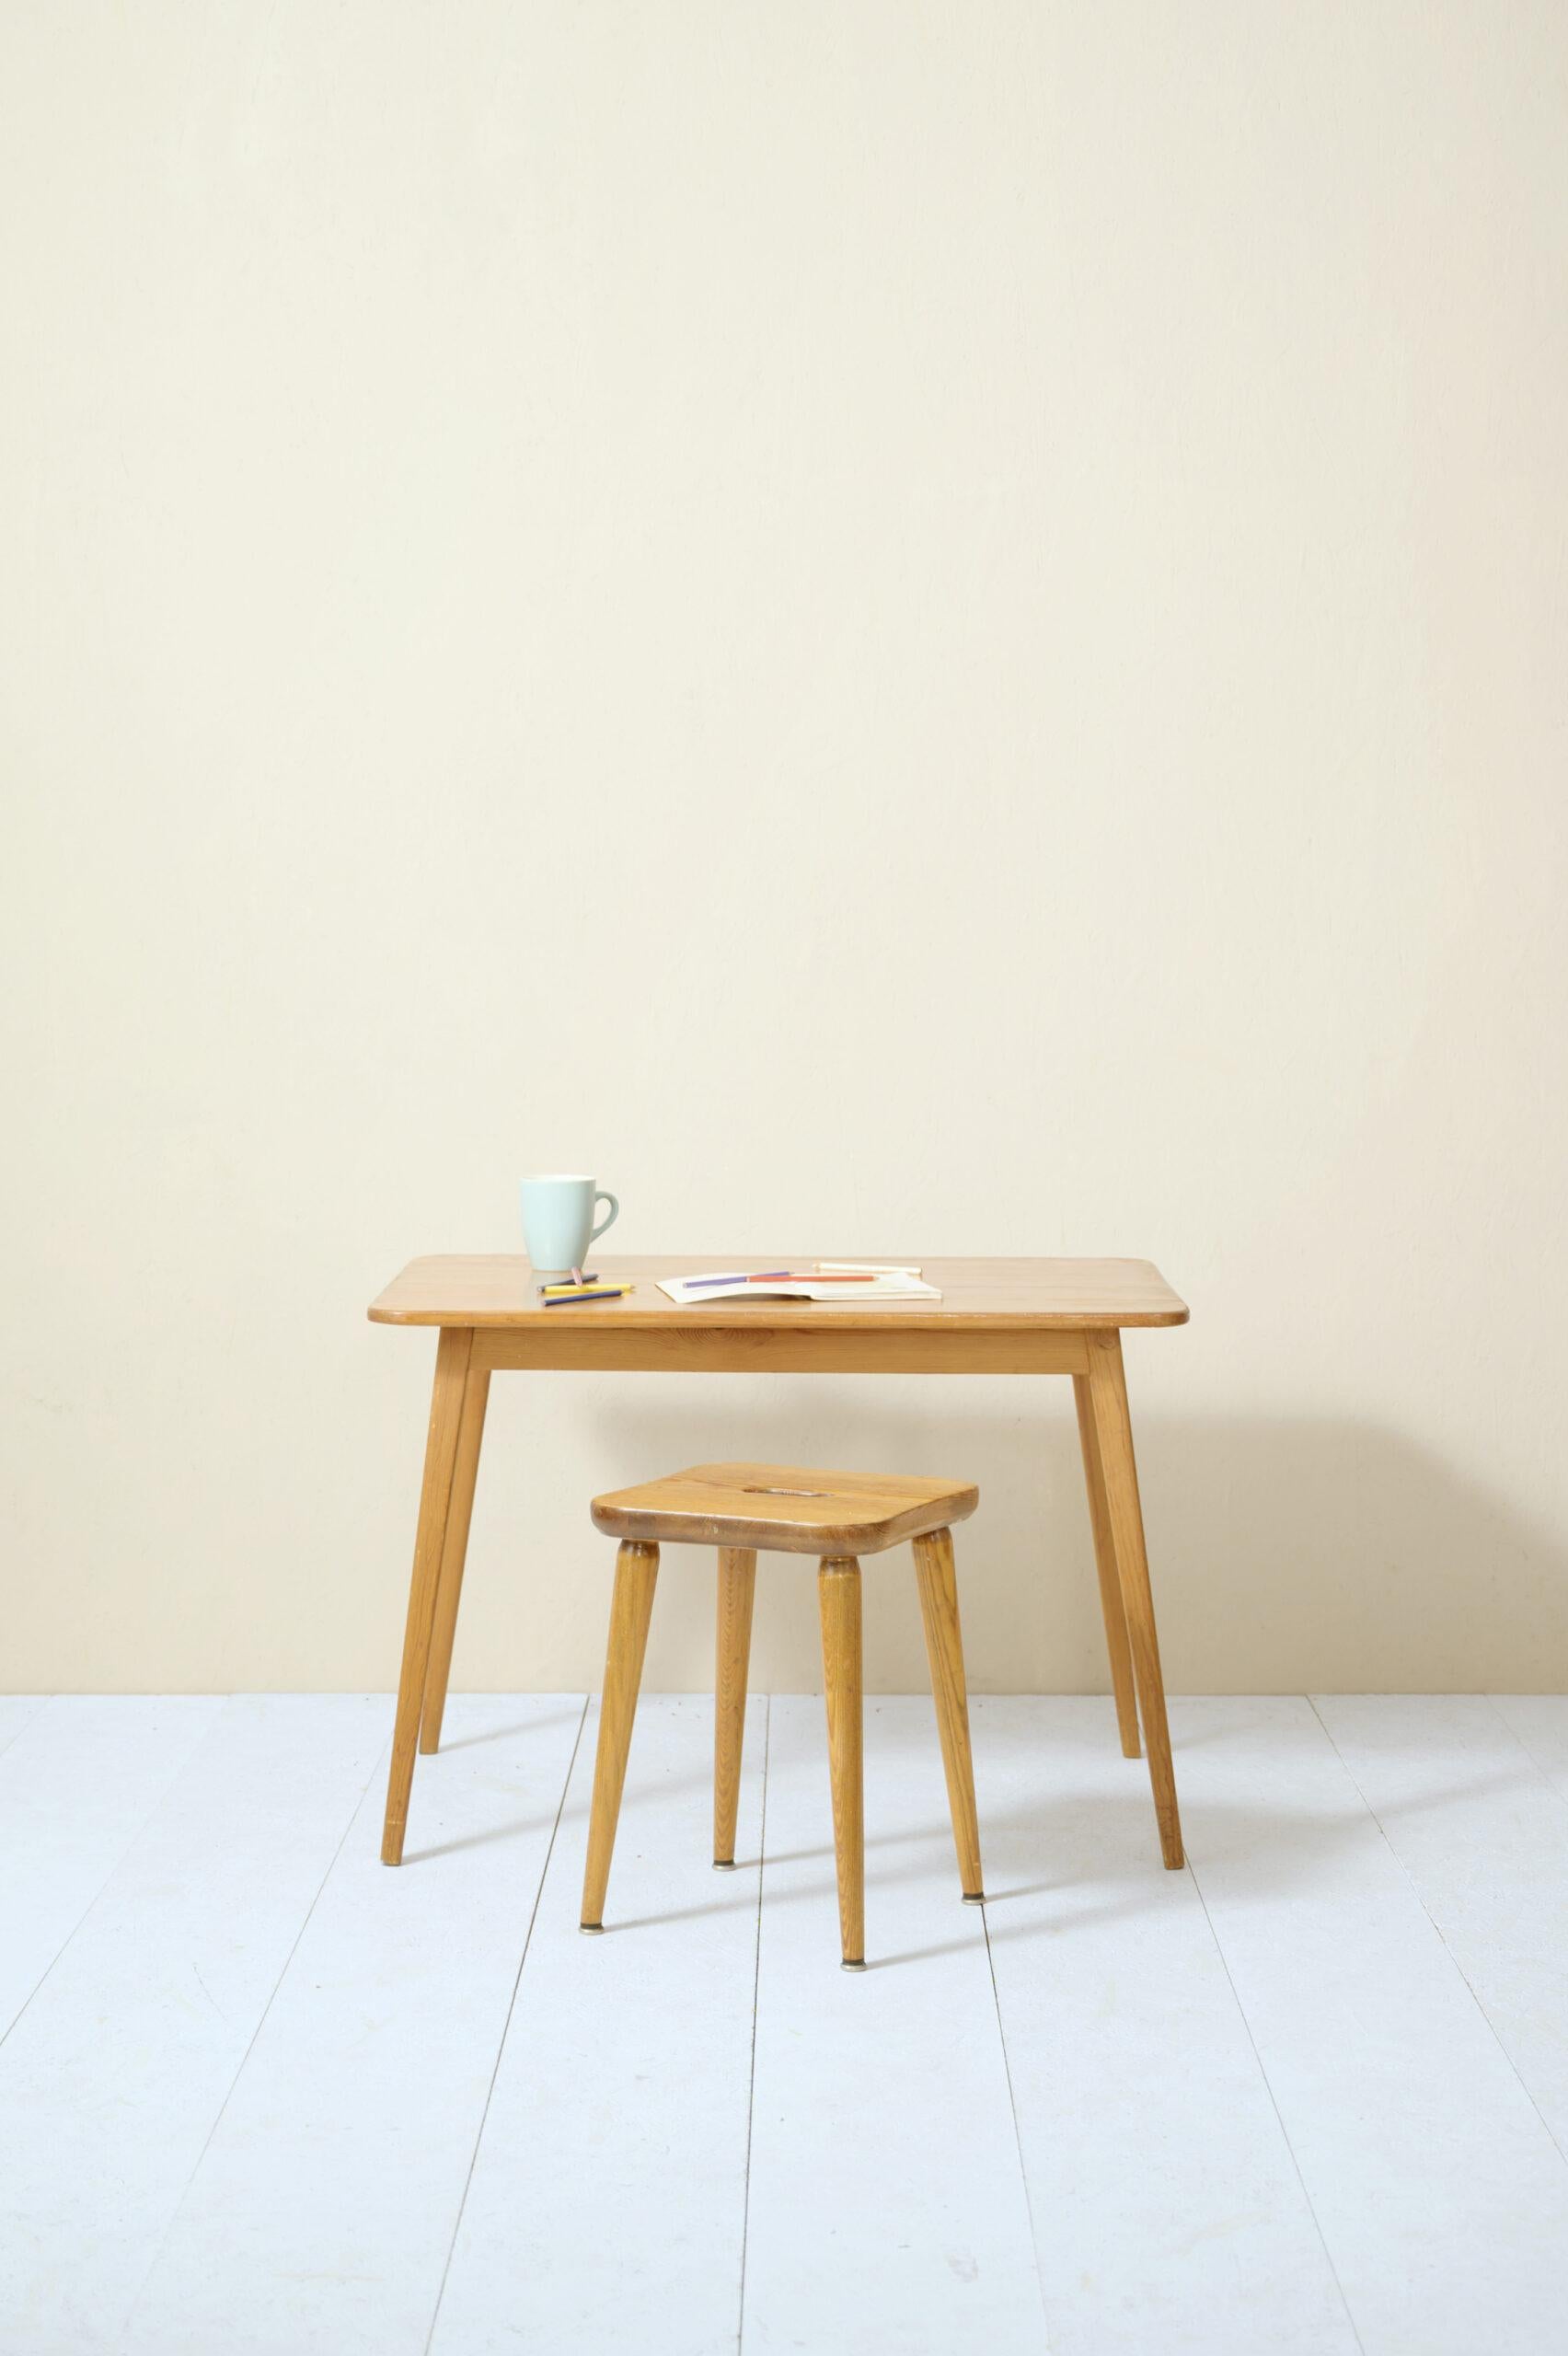 Tisch und Hocker aus Kiefernholz, entworfen von G. Malmvall für The Swedish Fur Company.

Zwei Möbelstücke skandinavischen Ursprungs, die sich durch die Art des verwendeten Holzes und den rustikalen, aber bereits modernen Stil auszeichnen.